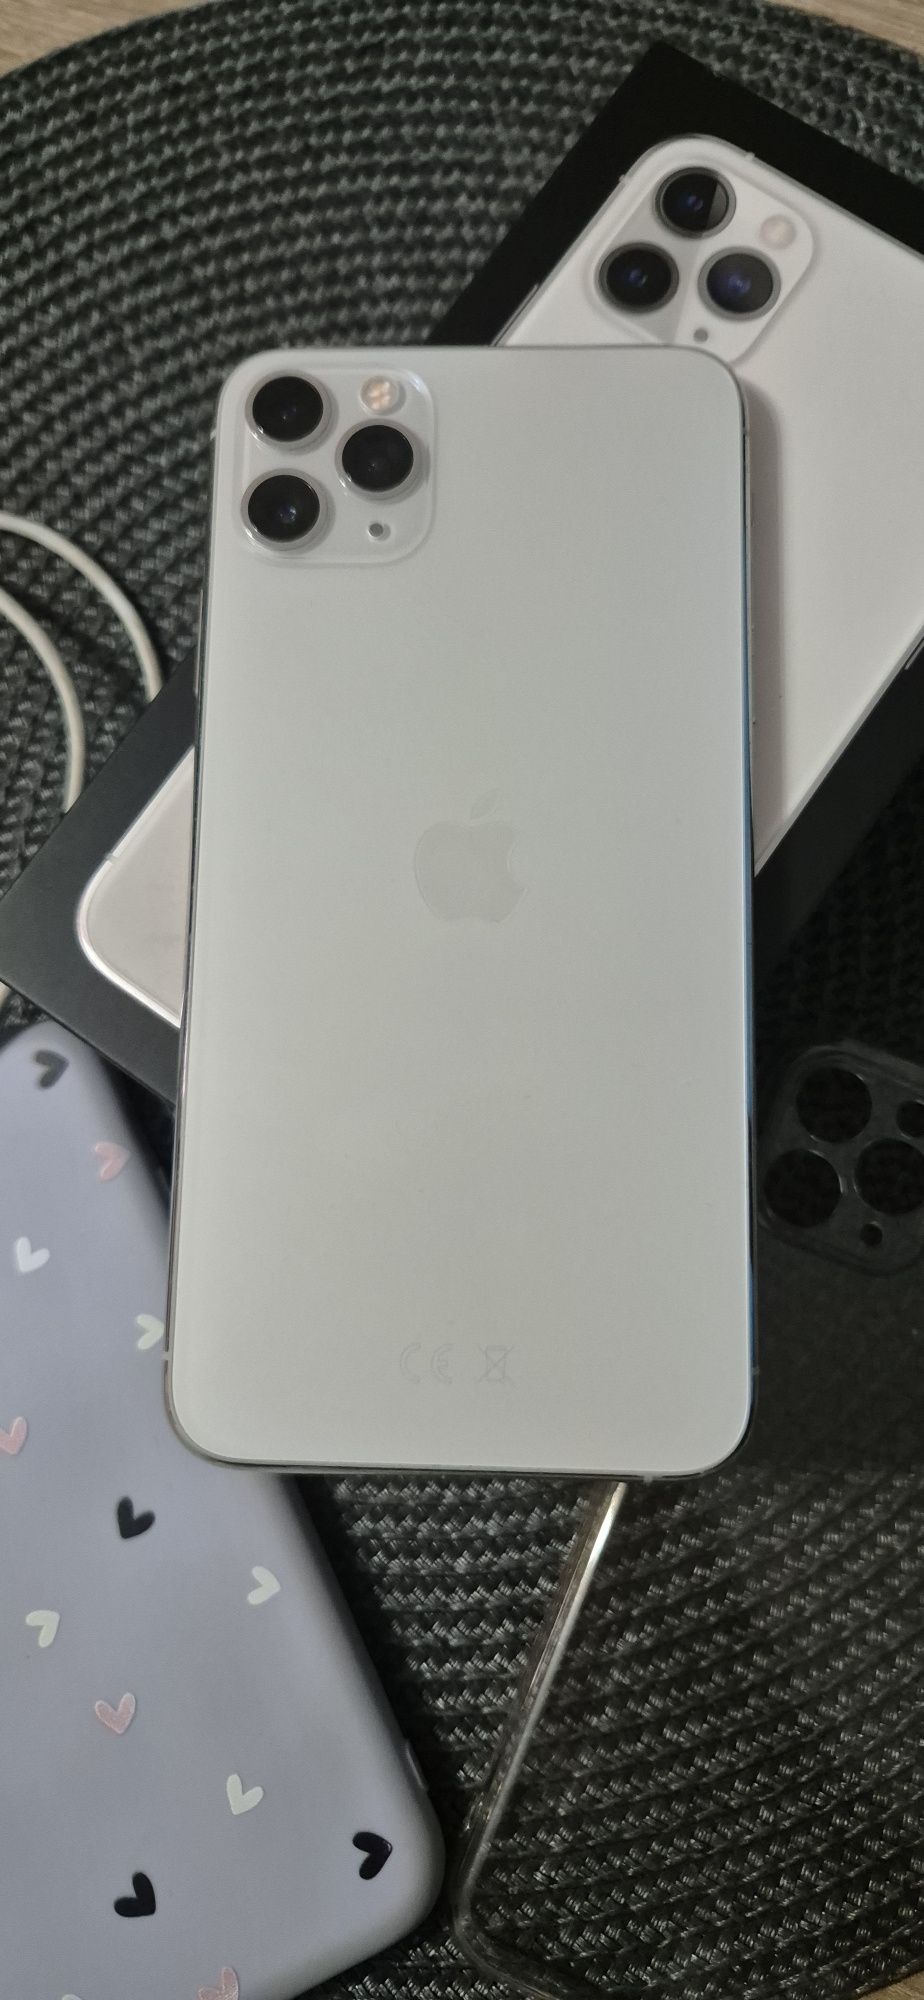 Iphone 11 Pro Max Biały/ White. Kupiony w iSpot